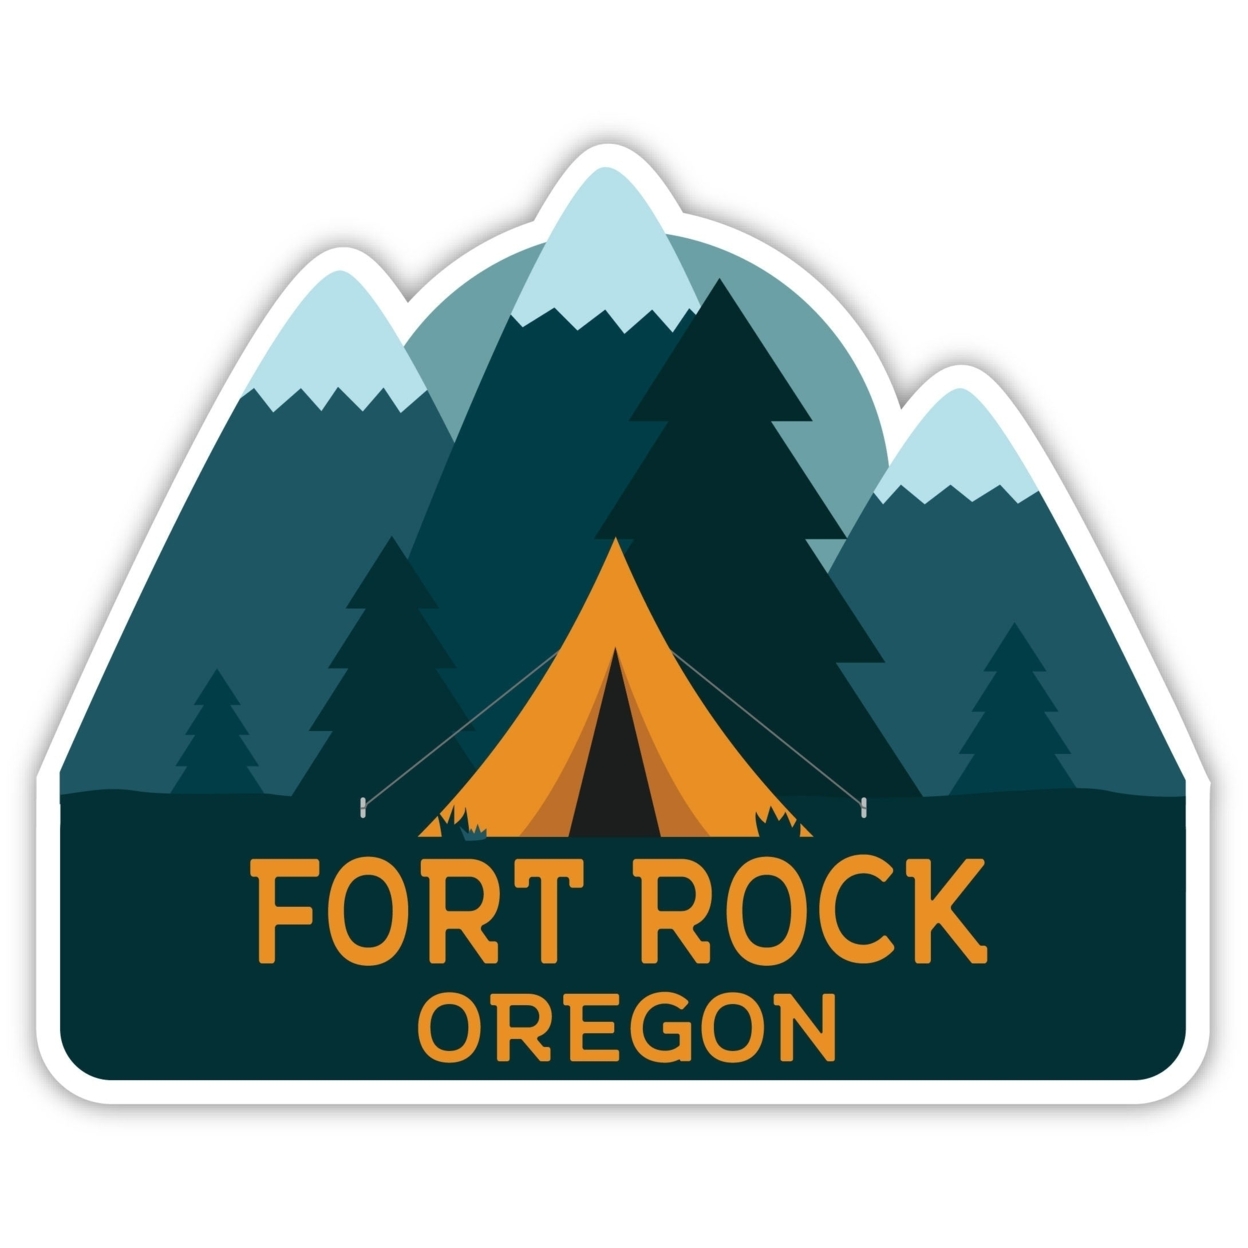 Fort Rock Oregon Souvenir Decorative Stickers (Choose Theme And Size) - Single Unit, 12-Inch, Tent